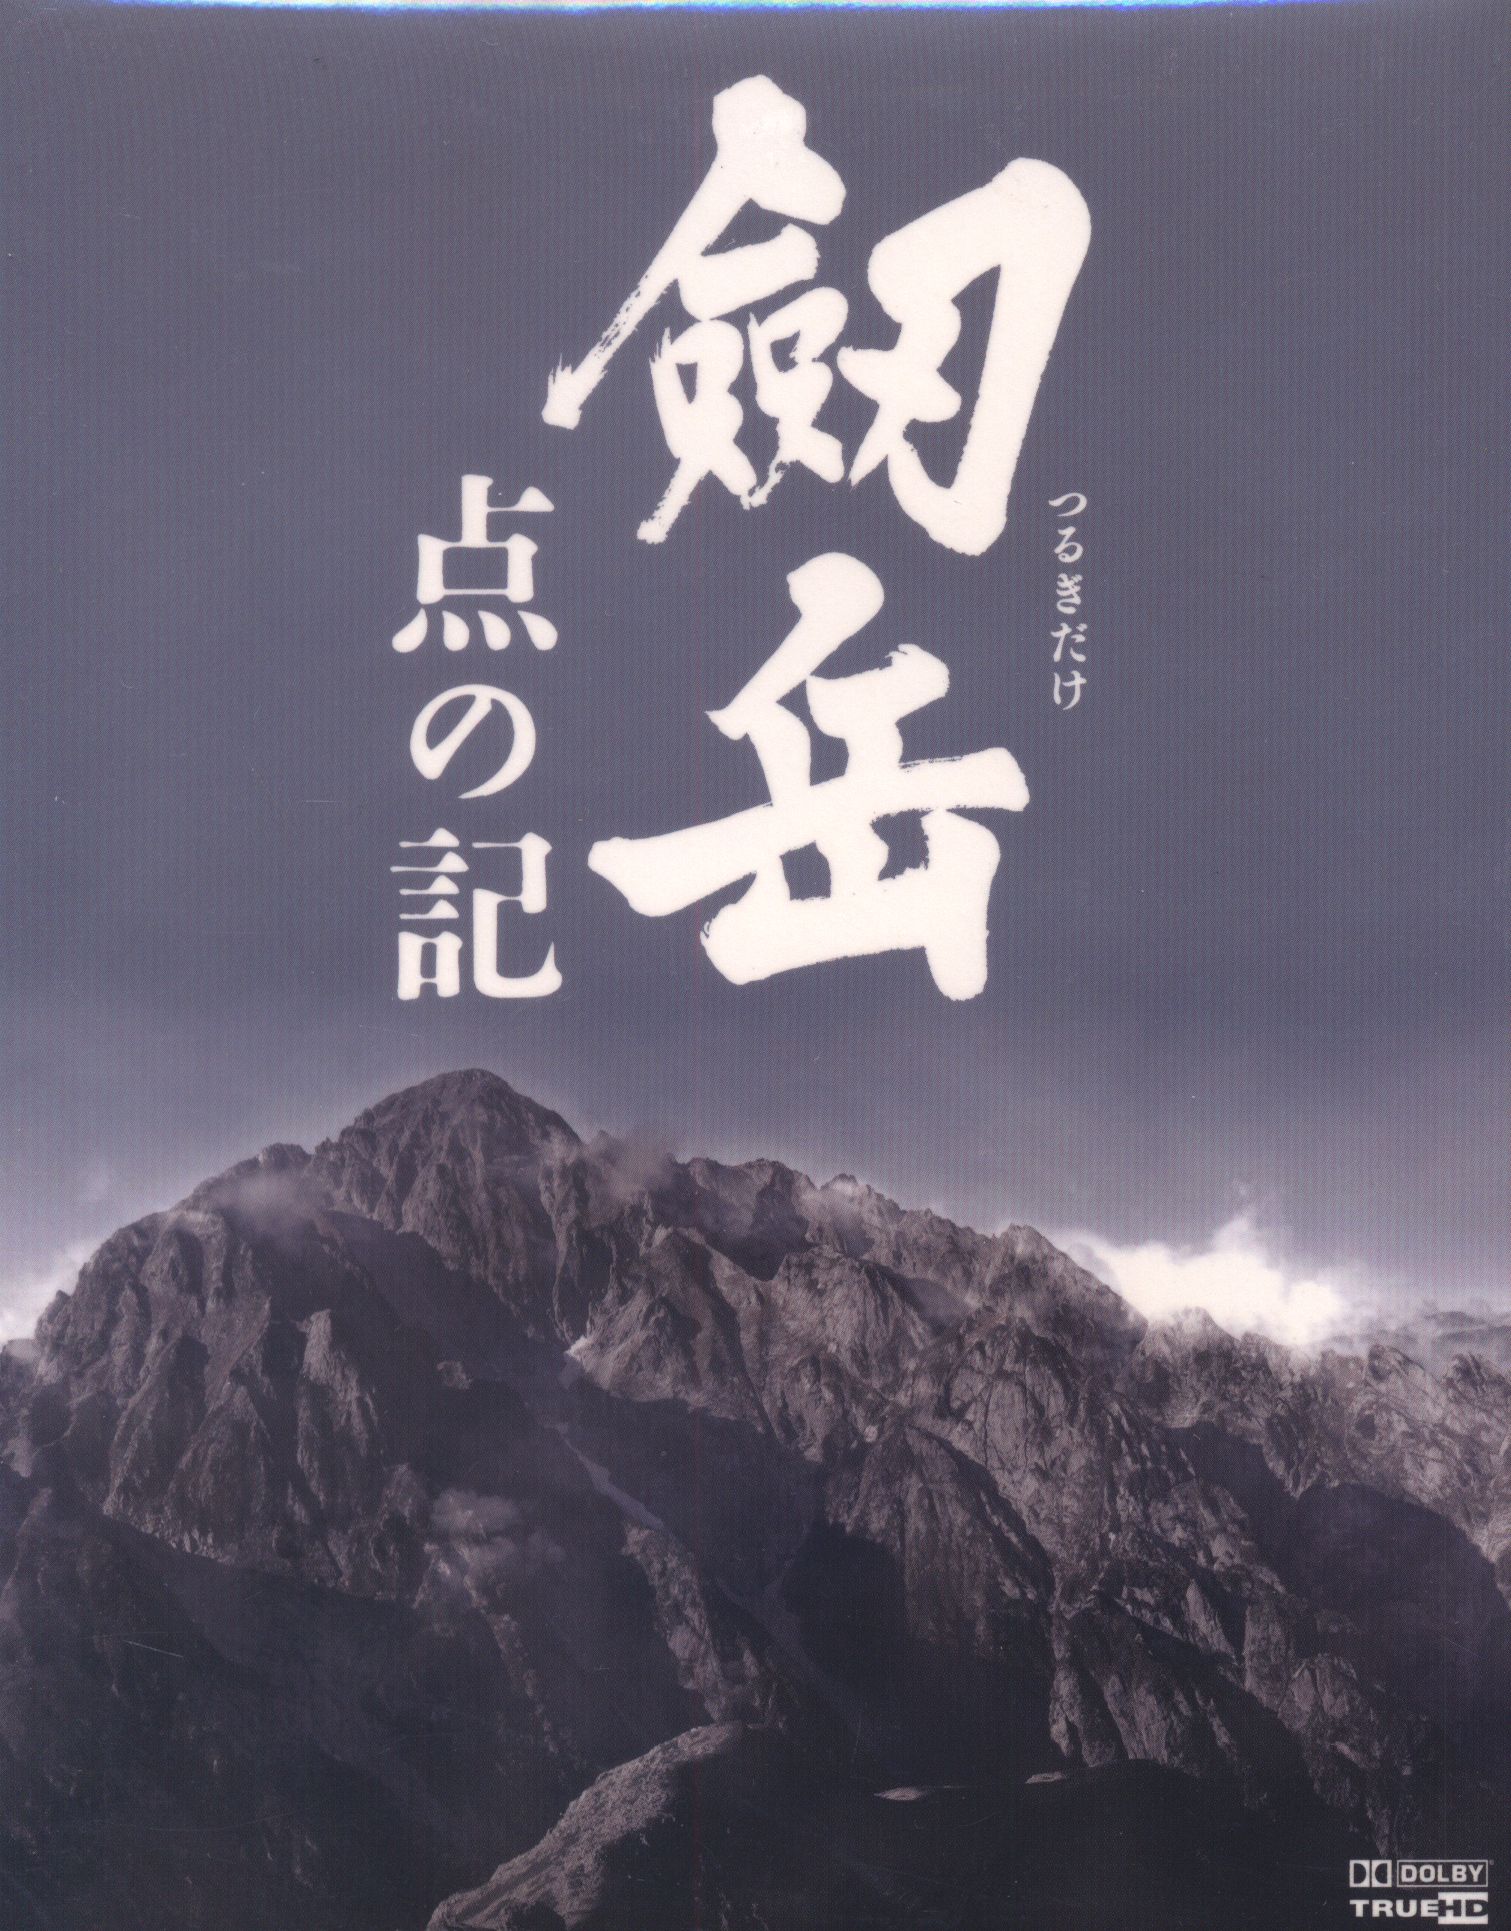 劔岳 撮影の記 標高3000メートル、激闘の873日 DVD